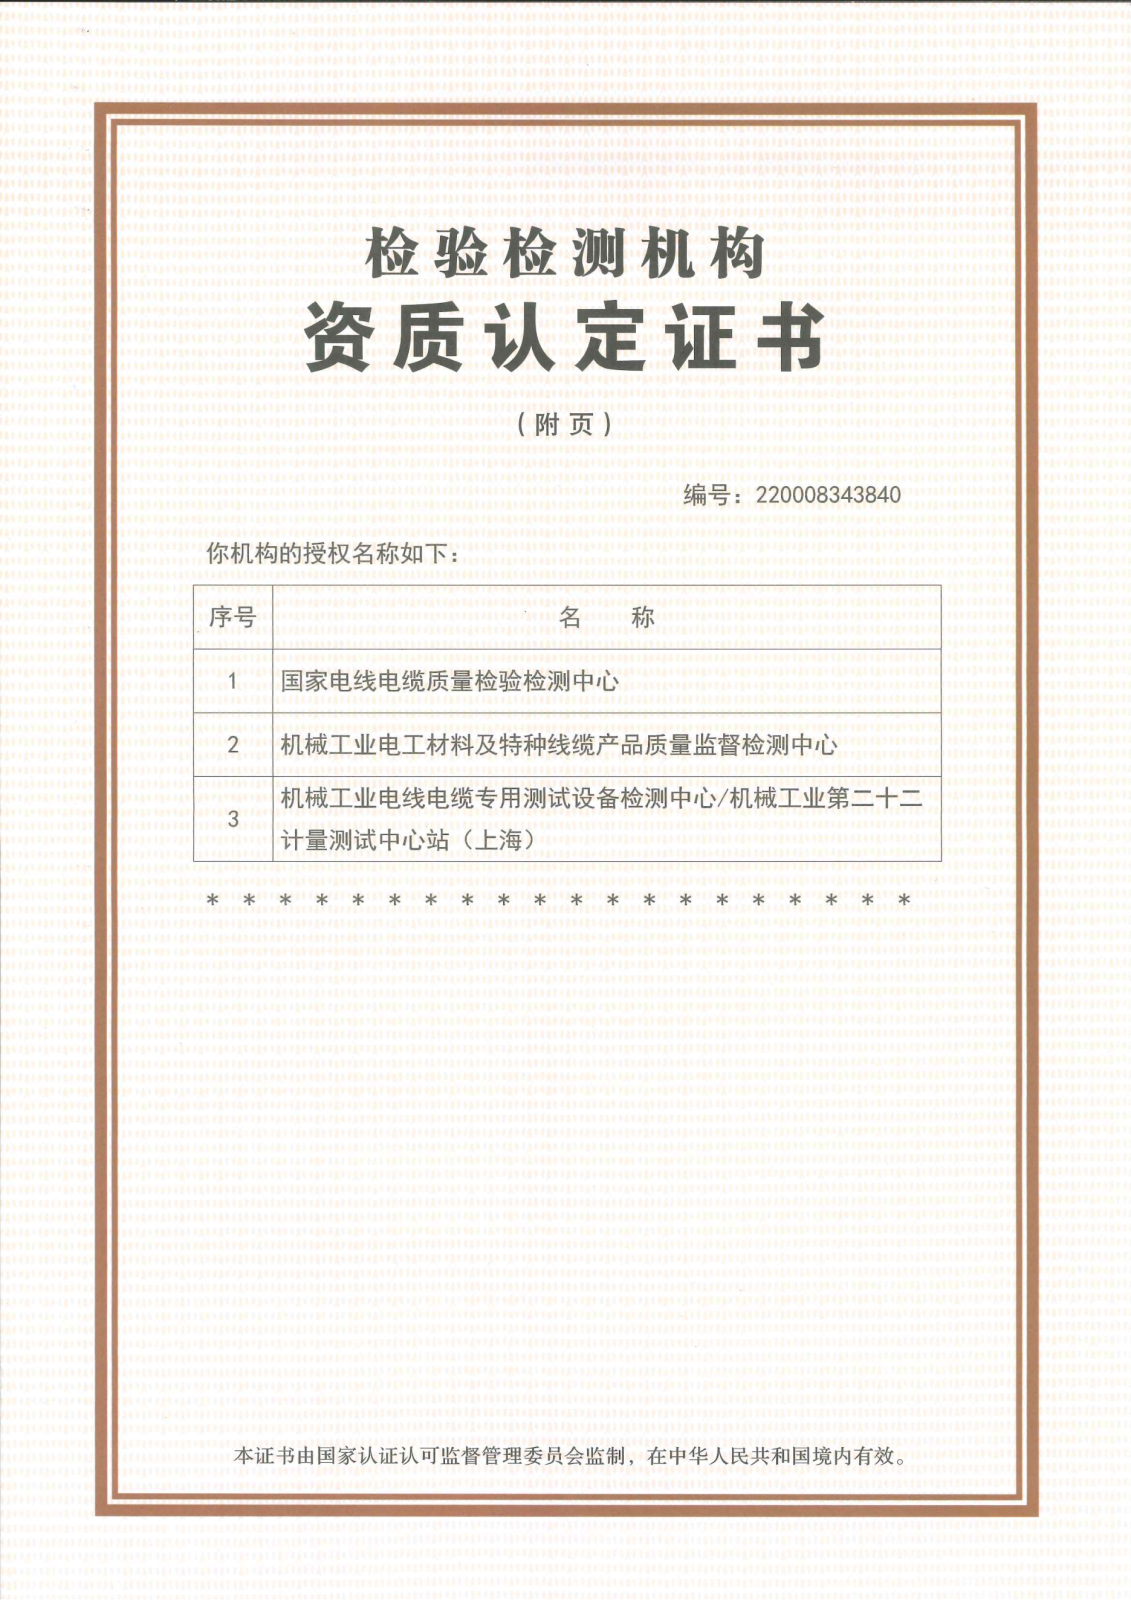 上海國纜檢測股份有限公司資質認定證書